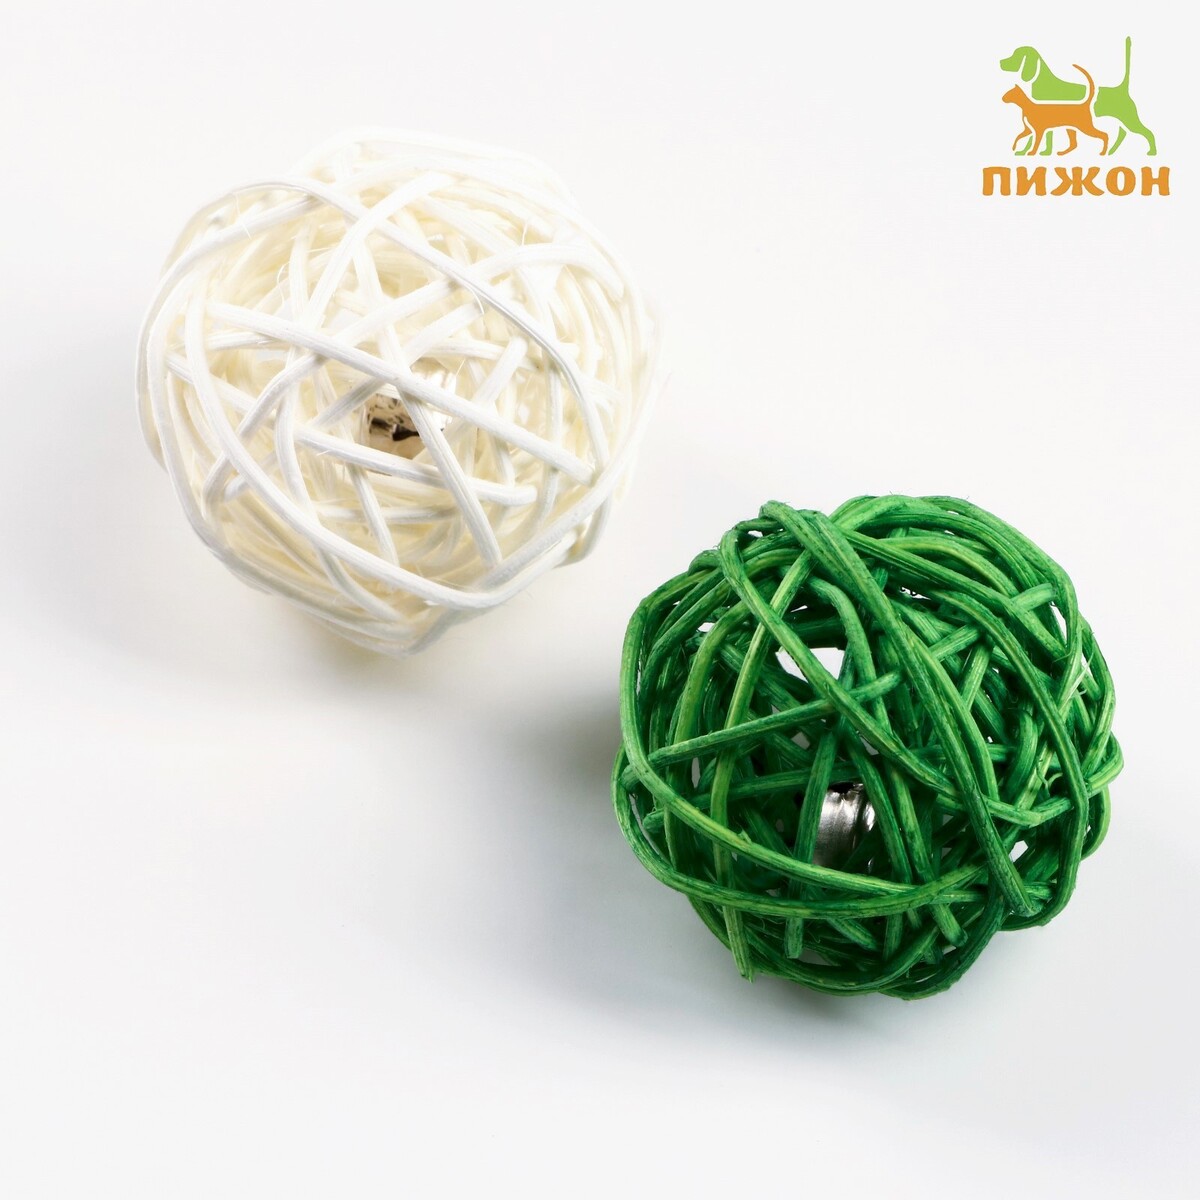 Набор из 2 плетеных шариков из лозы с бубенчиком, 5 см, белый/зеленый набор шариков для аквамозаики